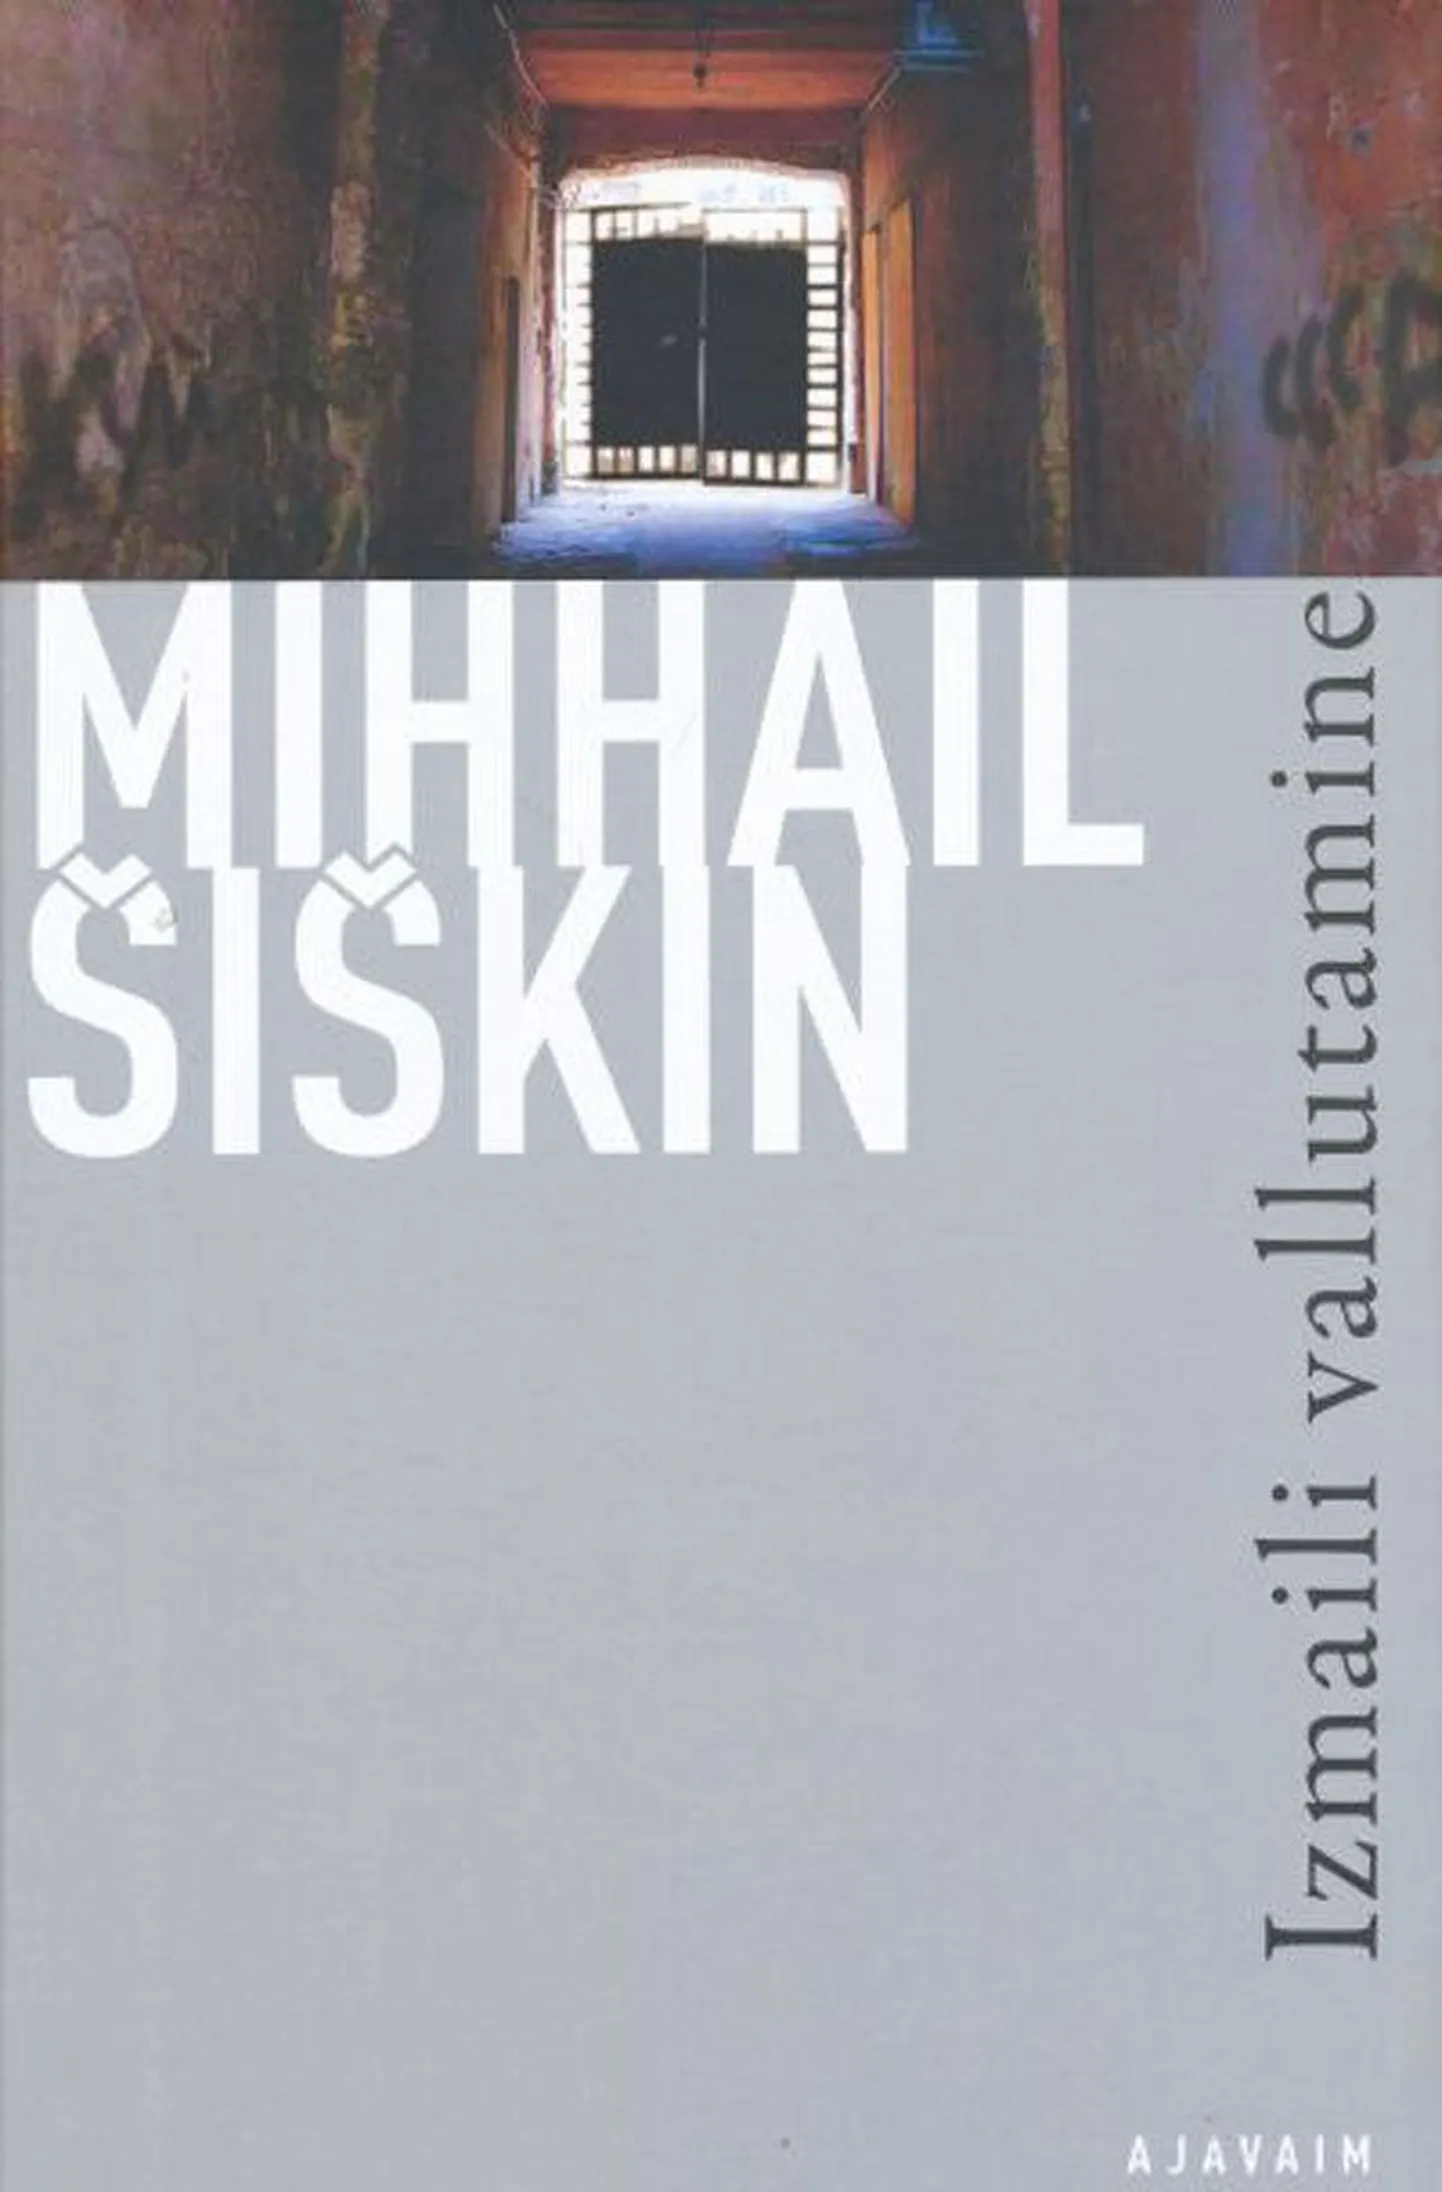 Raamat
Mihhail Šiškin
Izmaili vallutamine
Tõlkinud Meelis Lainvoo
Sari «Ajavaim», kirjastus Koolibri